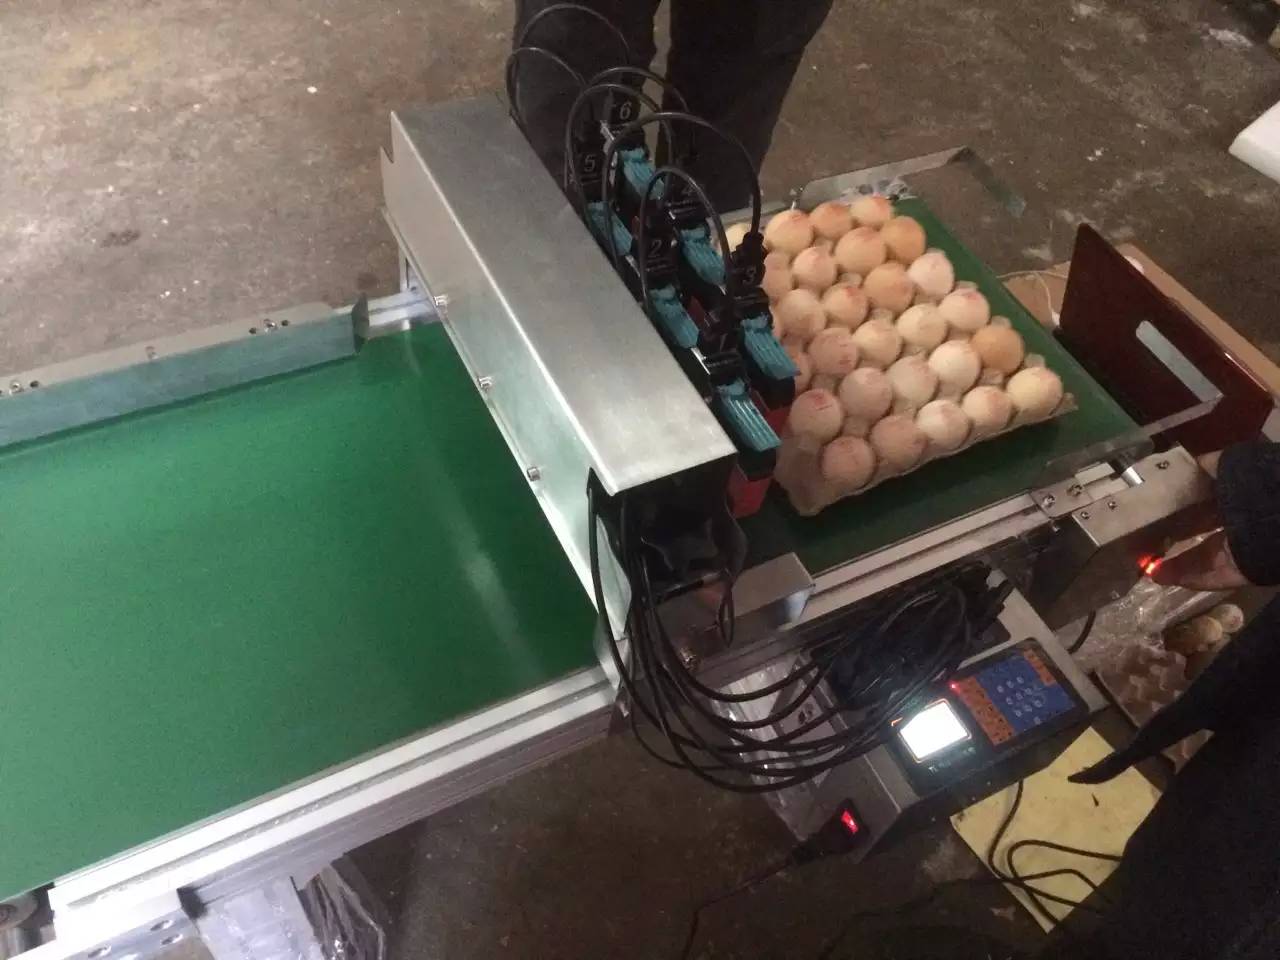 鸡蛋日期喷码机 红墨绿墨可食用级墨水喷码机 鸡蛋简易打码机